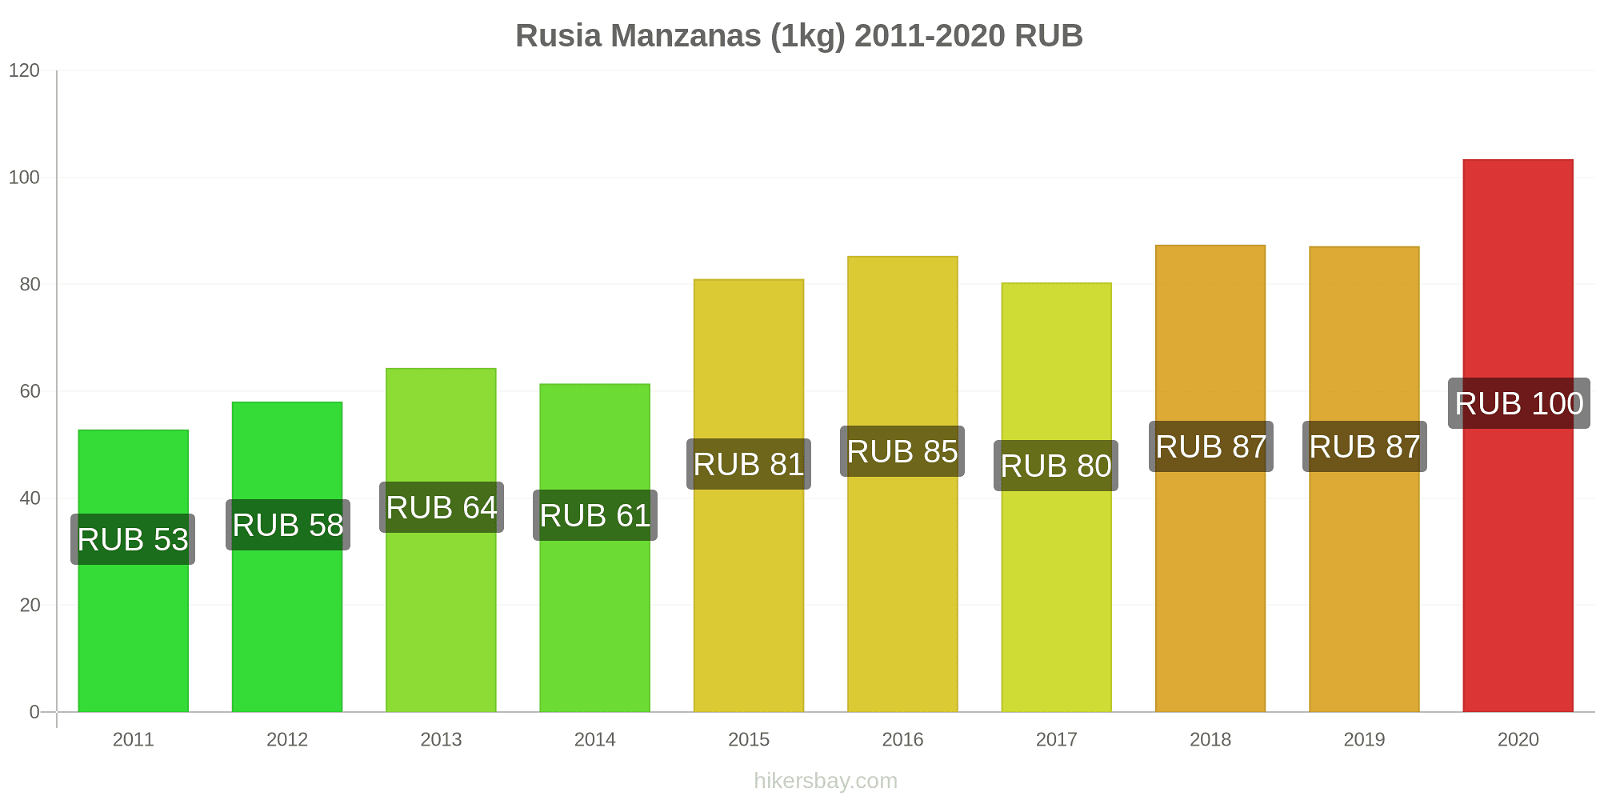 Rusia cambios de precios Manzanas (1kg) hikersbay.com